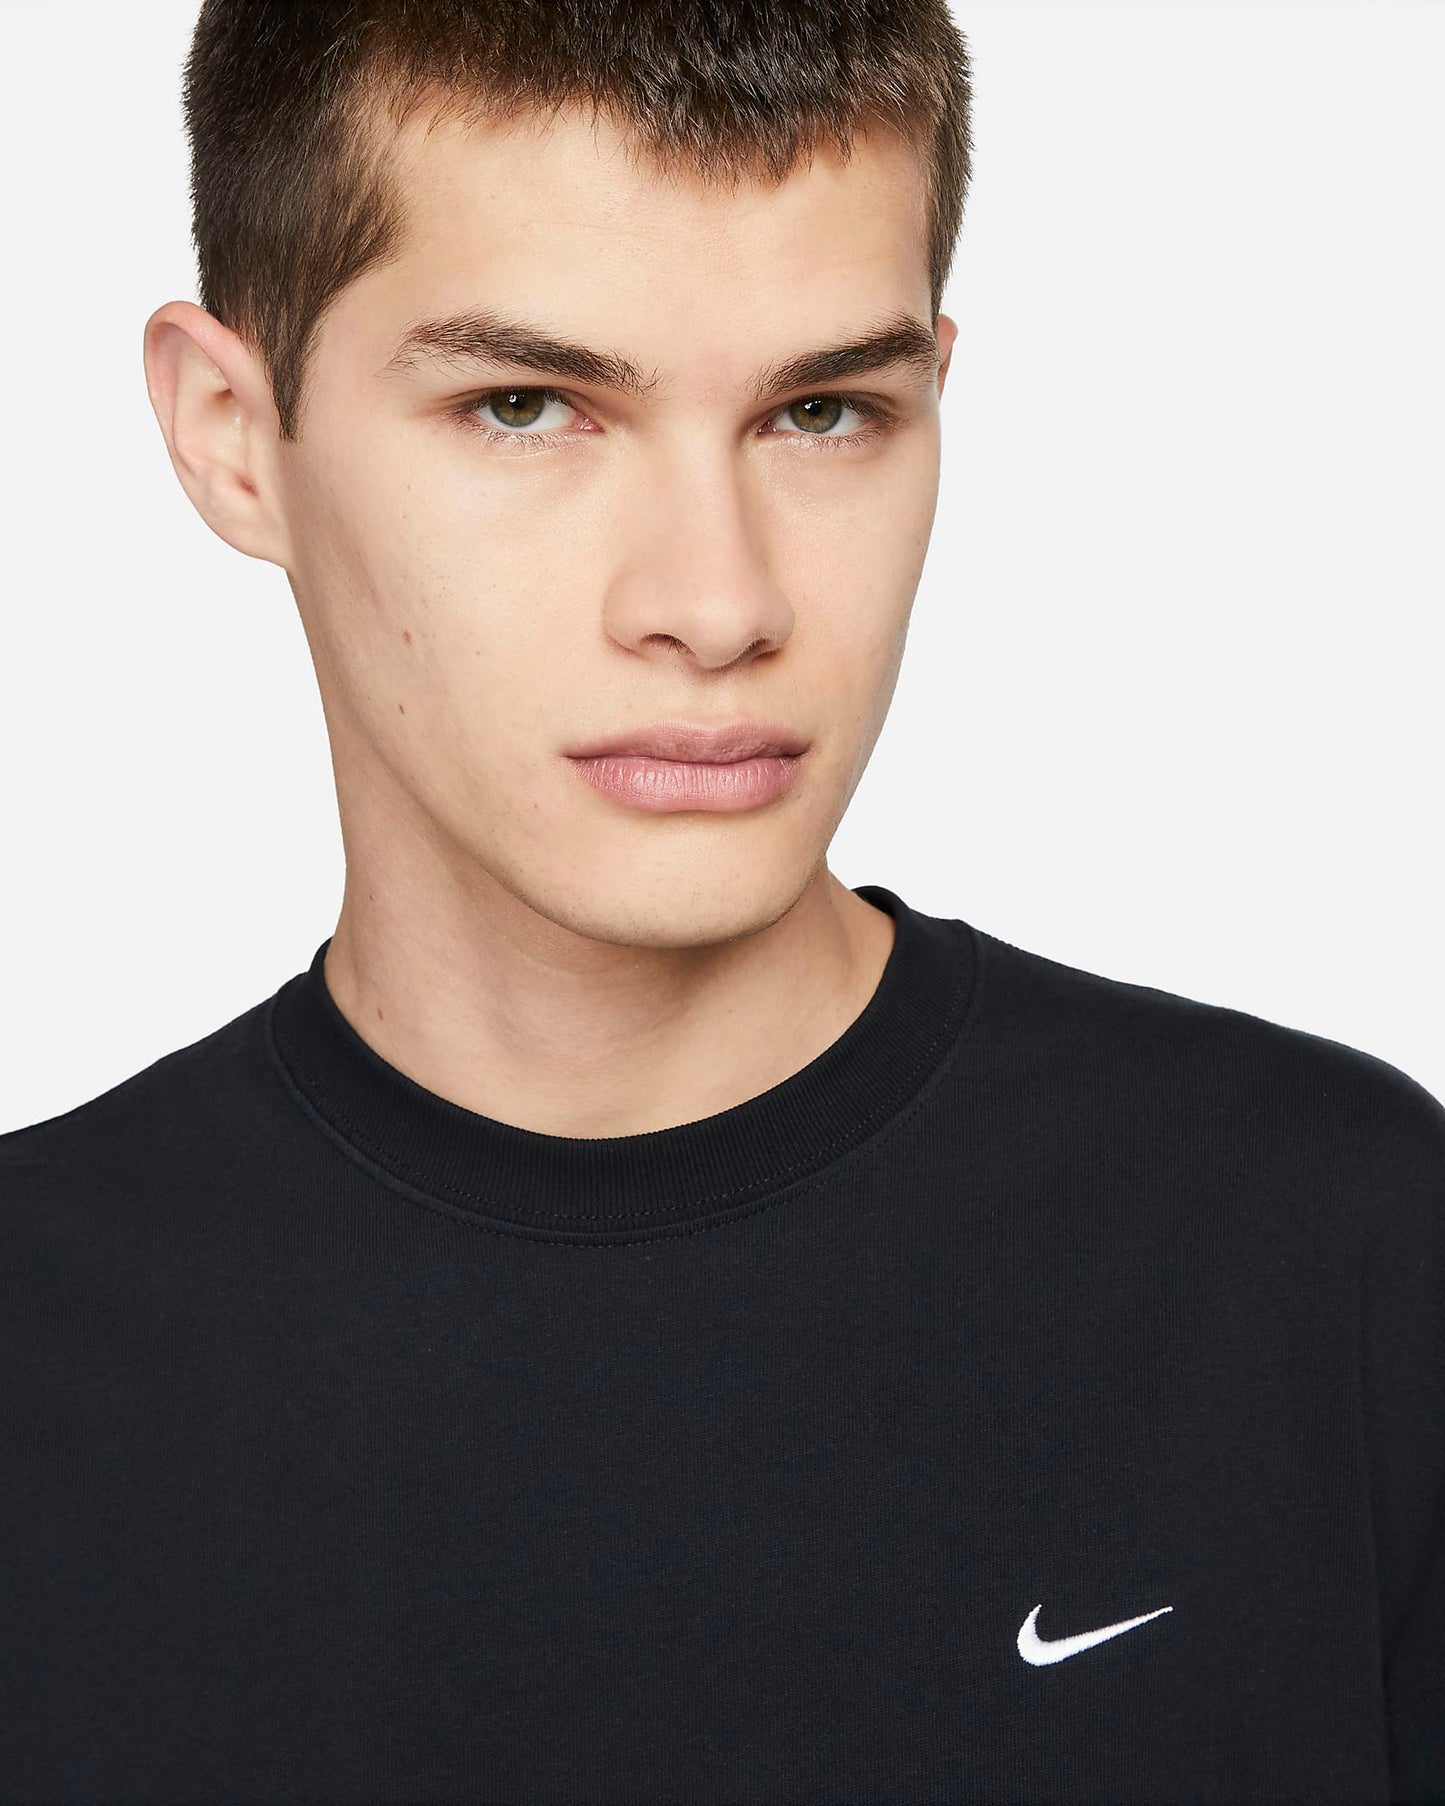 Nike Men's Solo Swoosh T-Shirt, Black/White